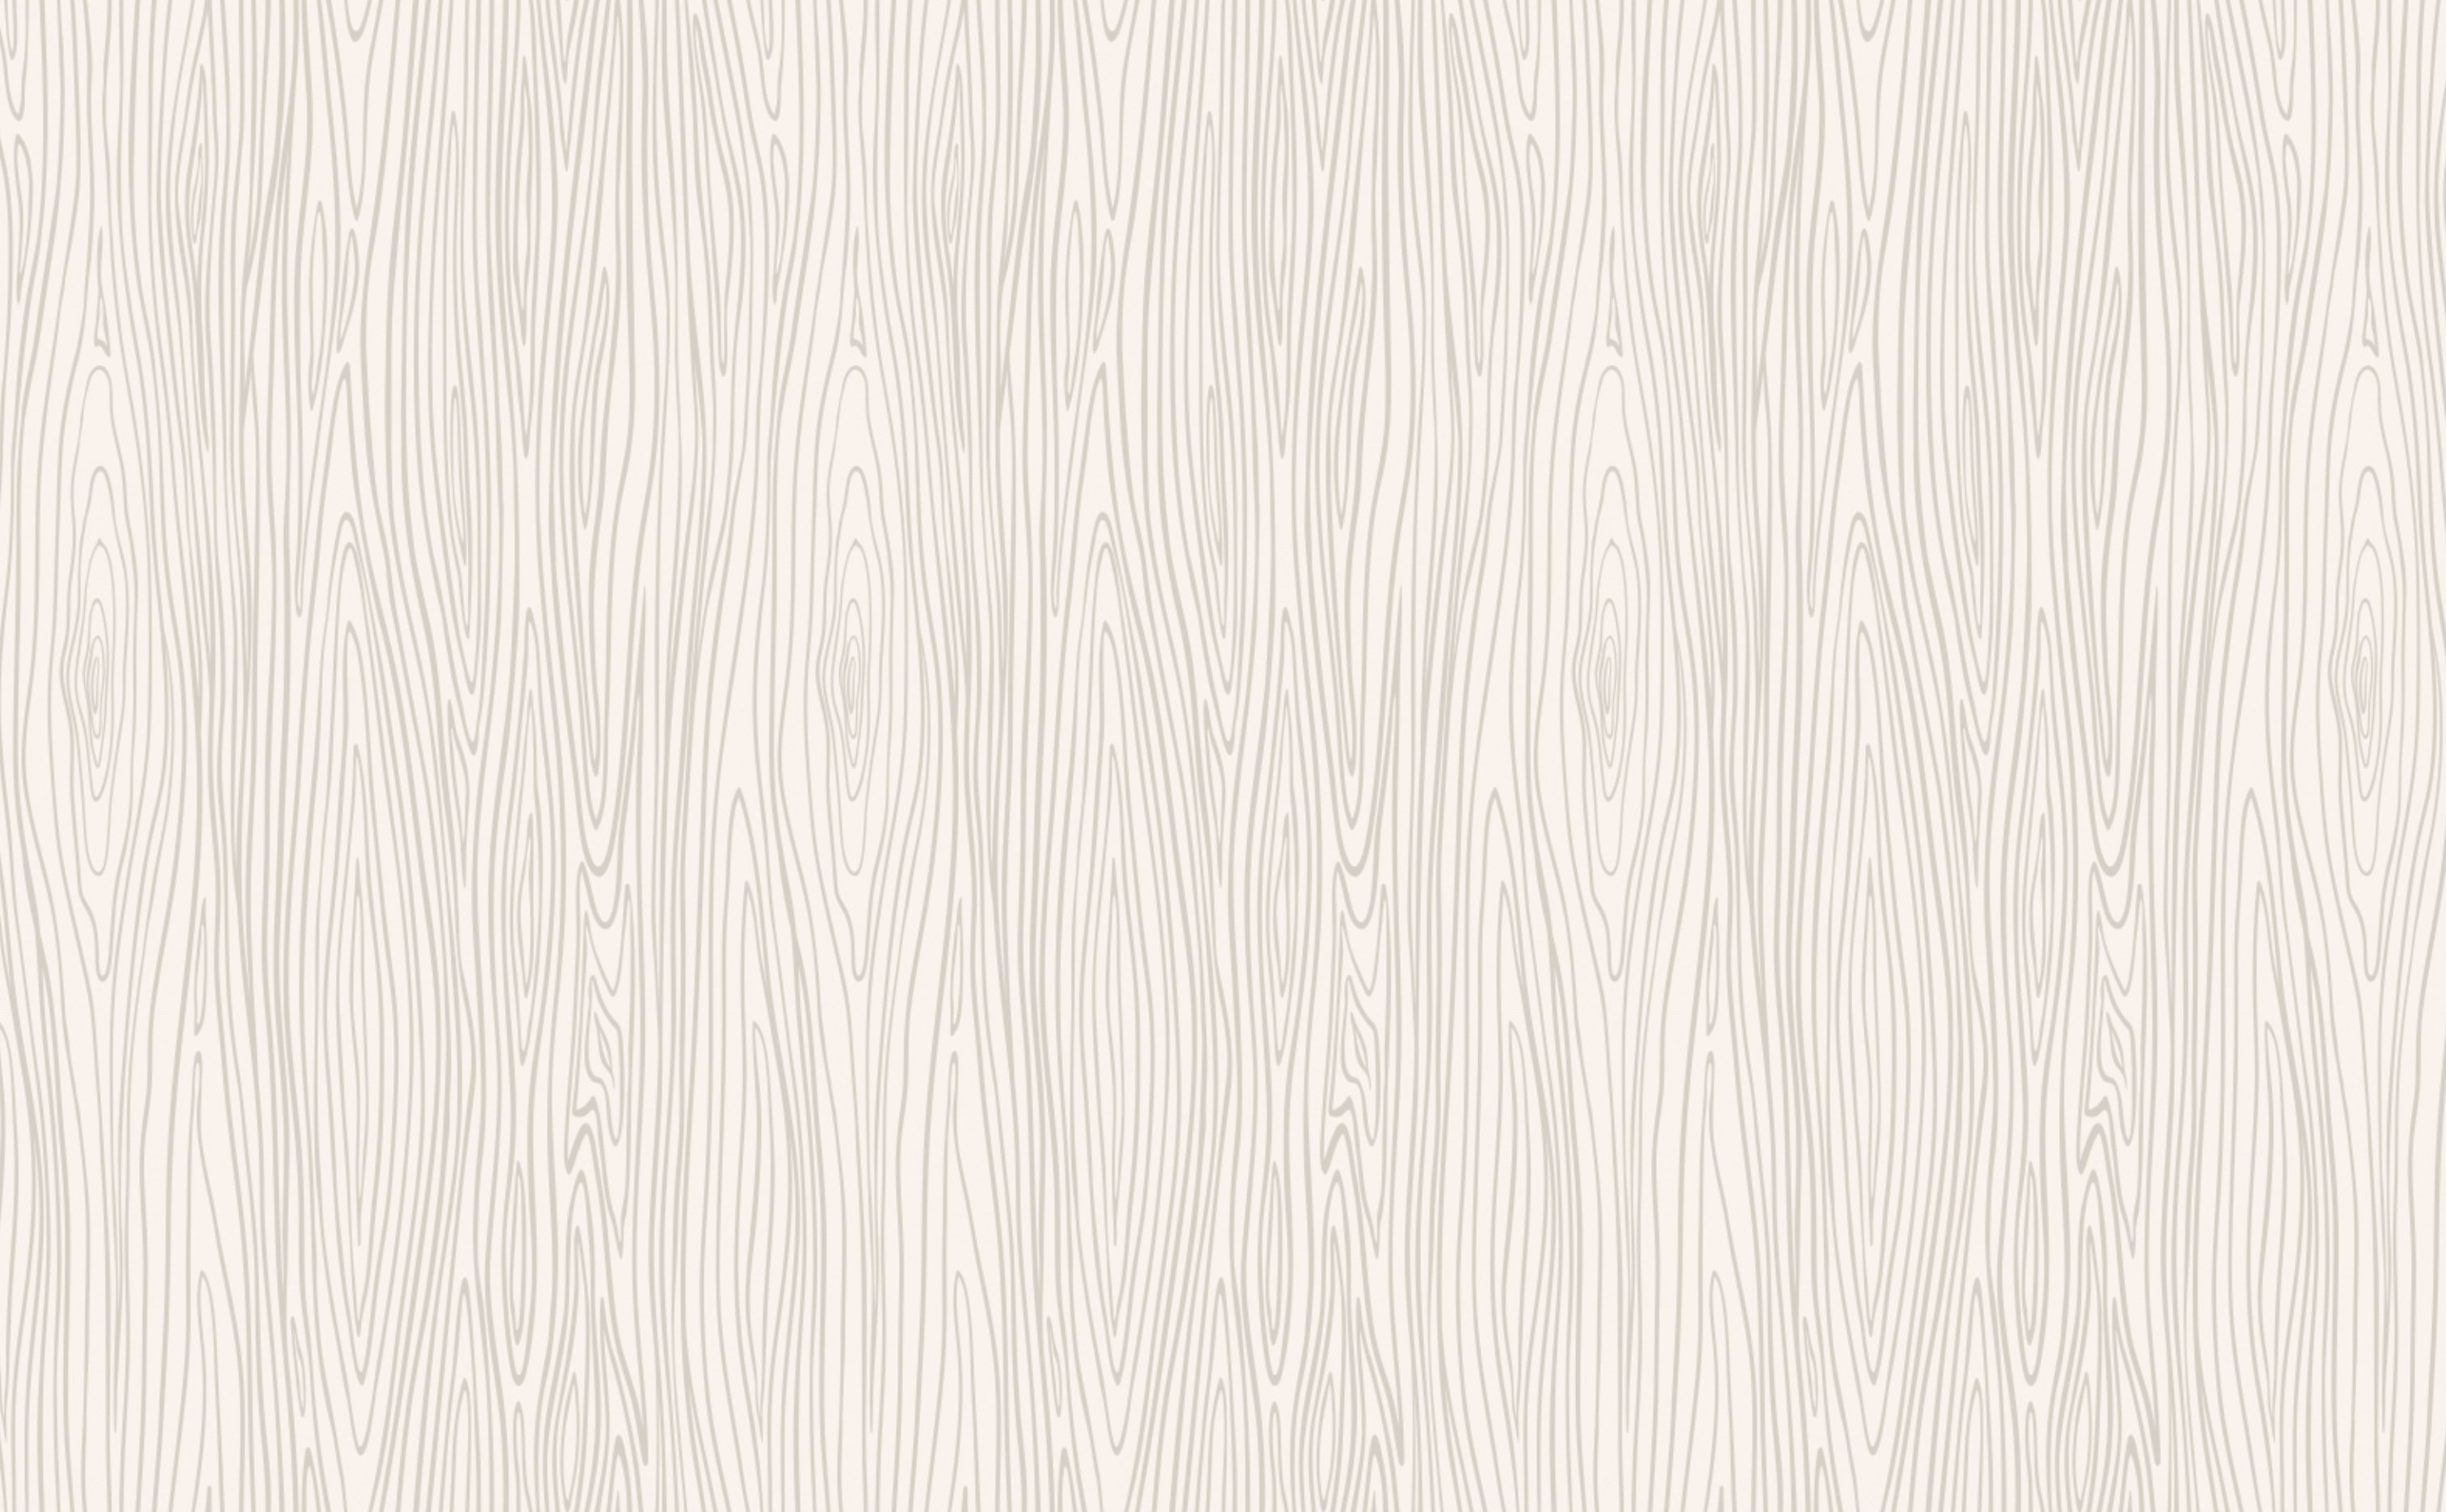 Giấy dán tường vân gỗ trắng giúp tôn lên không gian nhà bạn với vẻ đẹp sang trọng, hiện đại. Với chất liệu giấy tốt và độ bám dính cao, sản phẩm giúp phòng ngủ của bạn trở nên mới mẻ hơn bao giờ hết. Không chỉ có mẫu vân gỗ trắng, bạn còn có nhiều lựa chọn khác như giả gỗ, nền giấy dán tường vân gỗ màu nâu v.v.